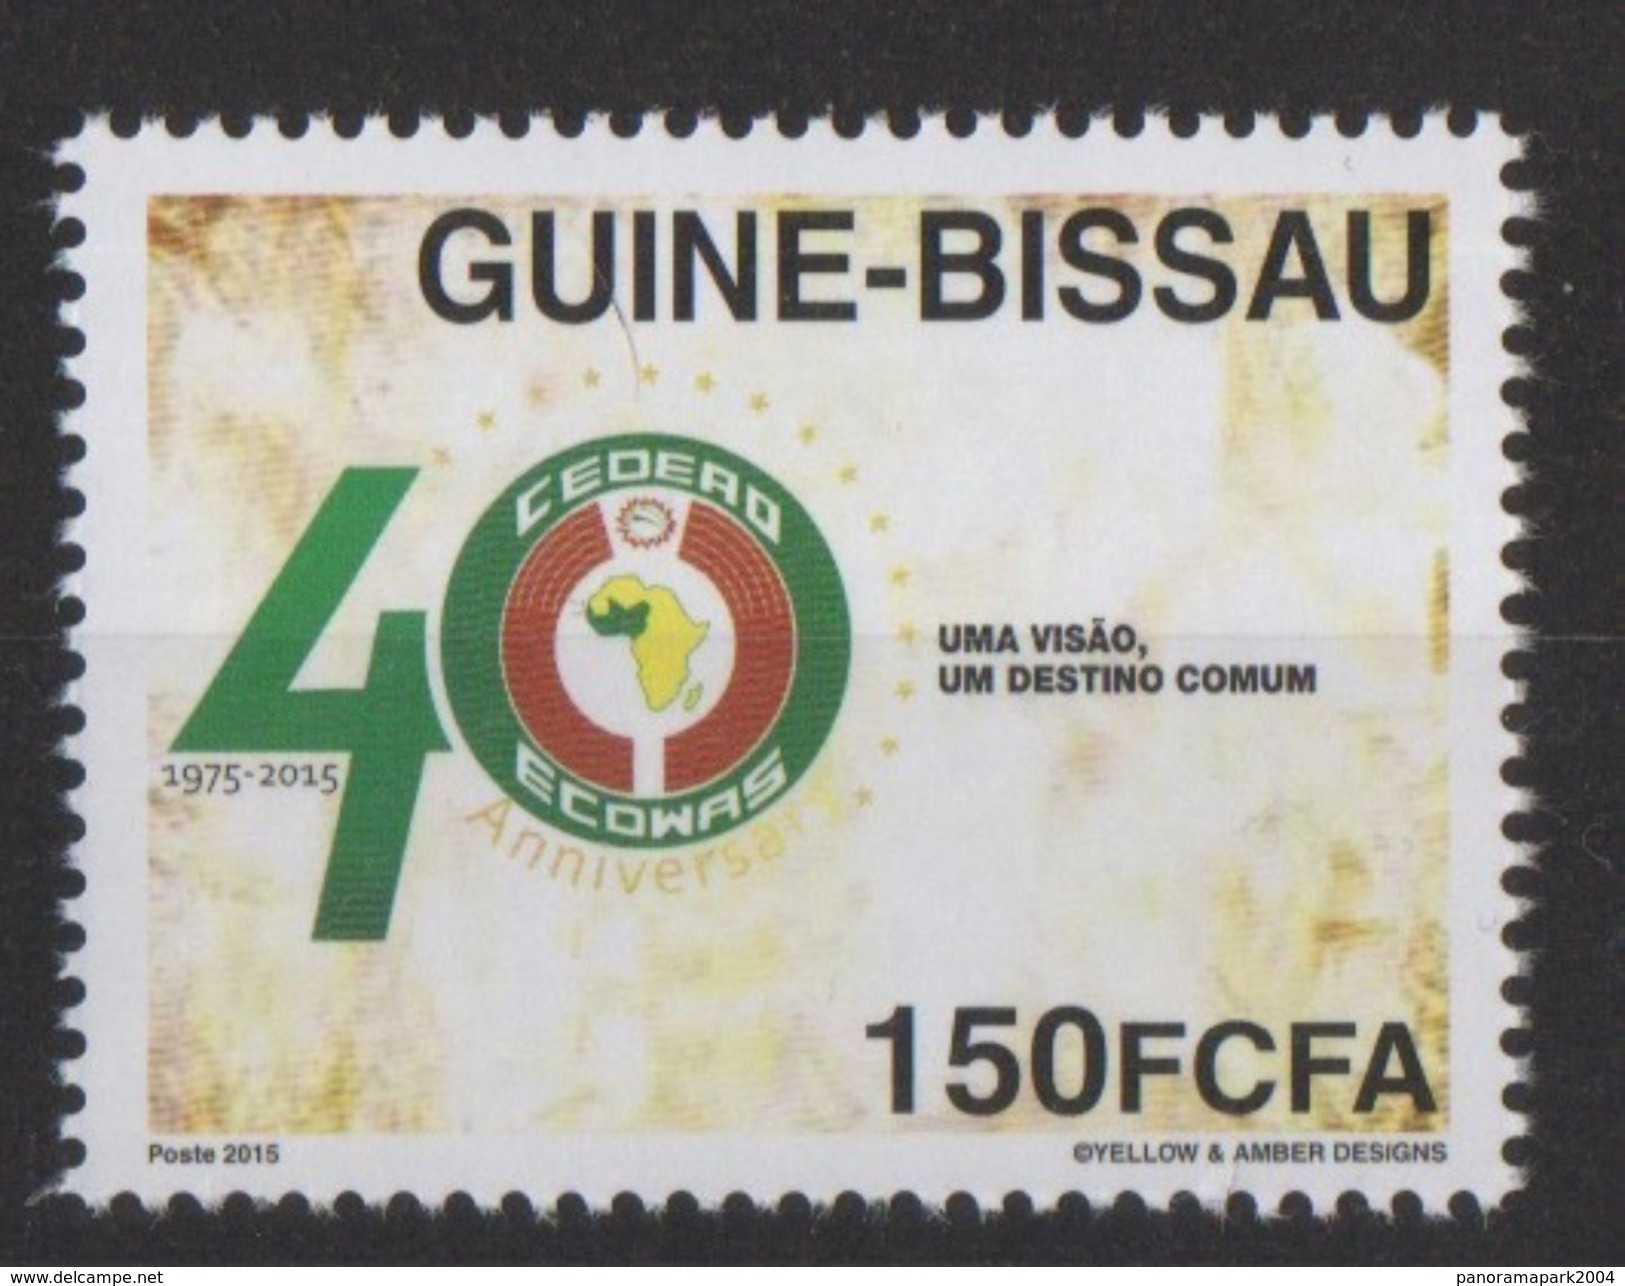 Guiné Bissau Guinea Guinée 2015 Emission Commune Joint Issue CEDEAO ECOWAS 40 Ans 40 Years - Emisiones Comunes